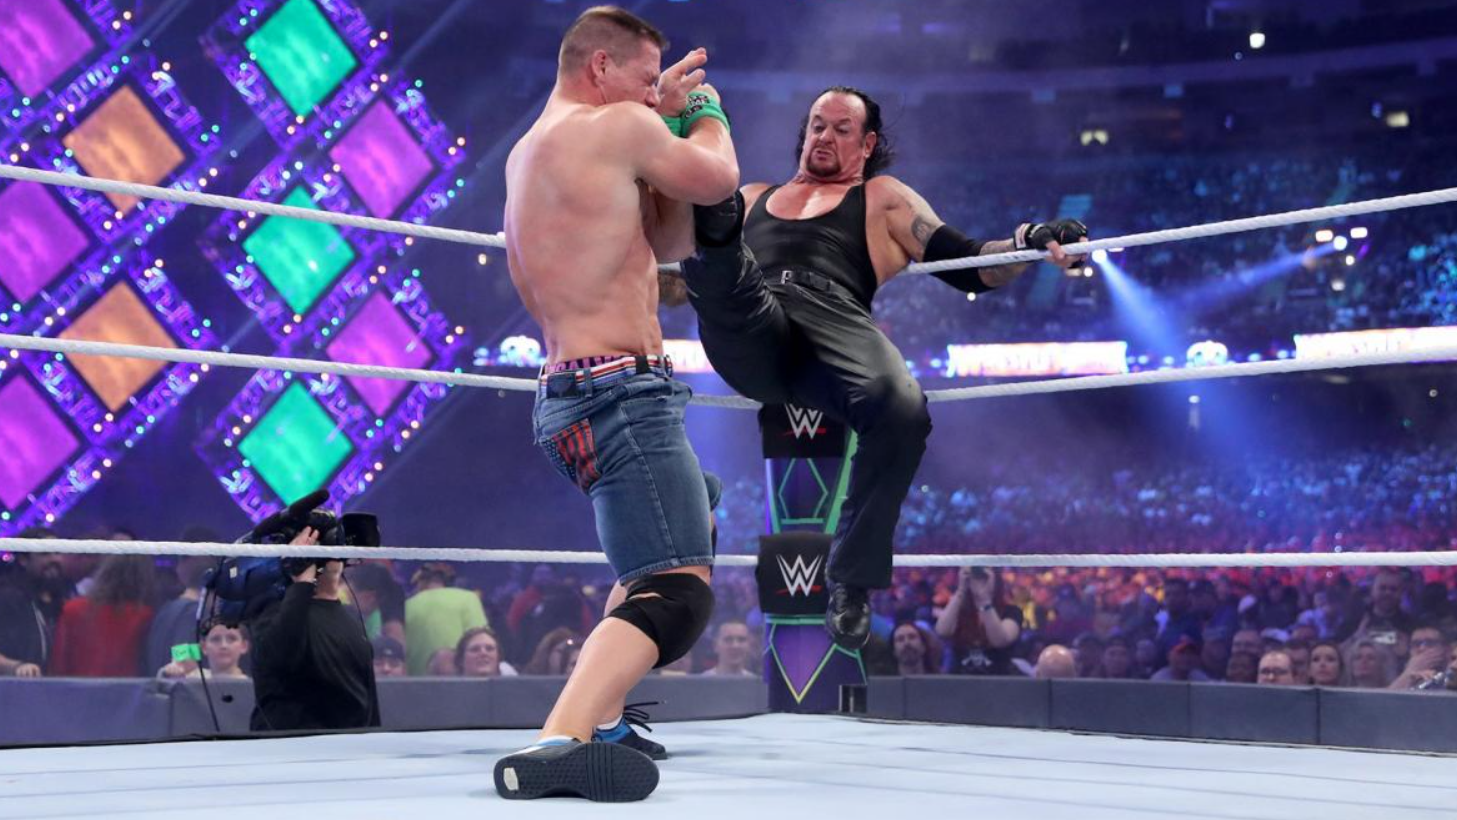 John Cena vs the Undertaker